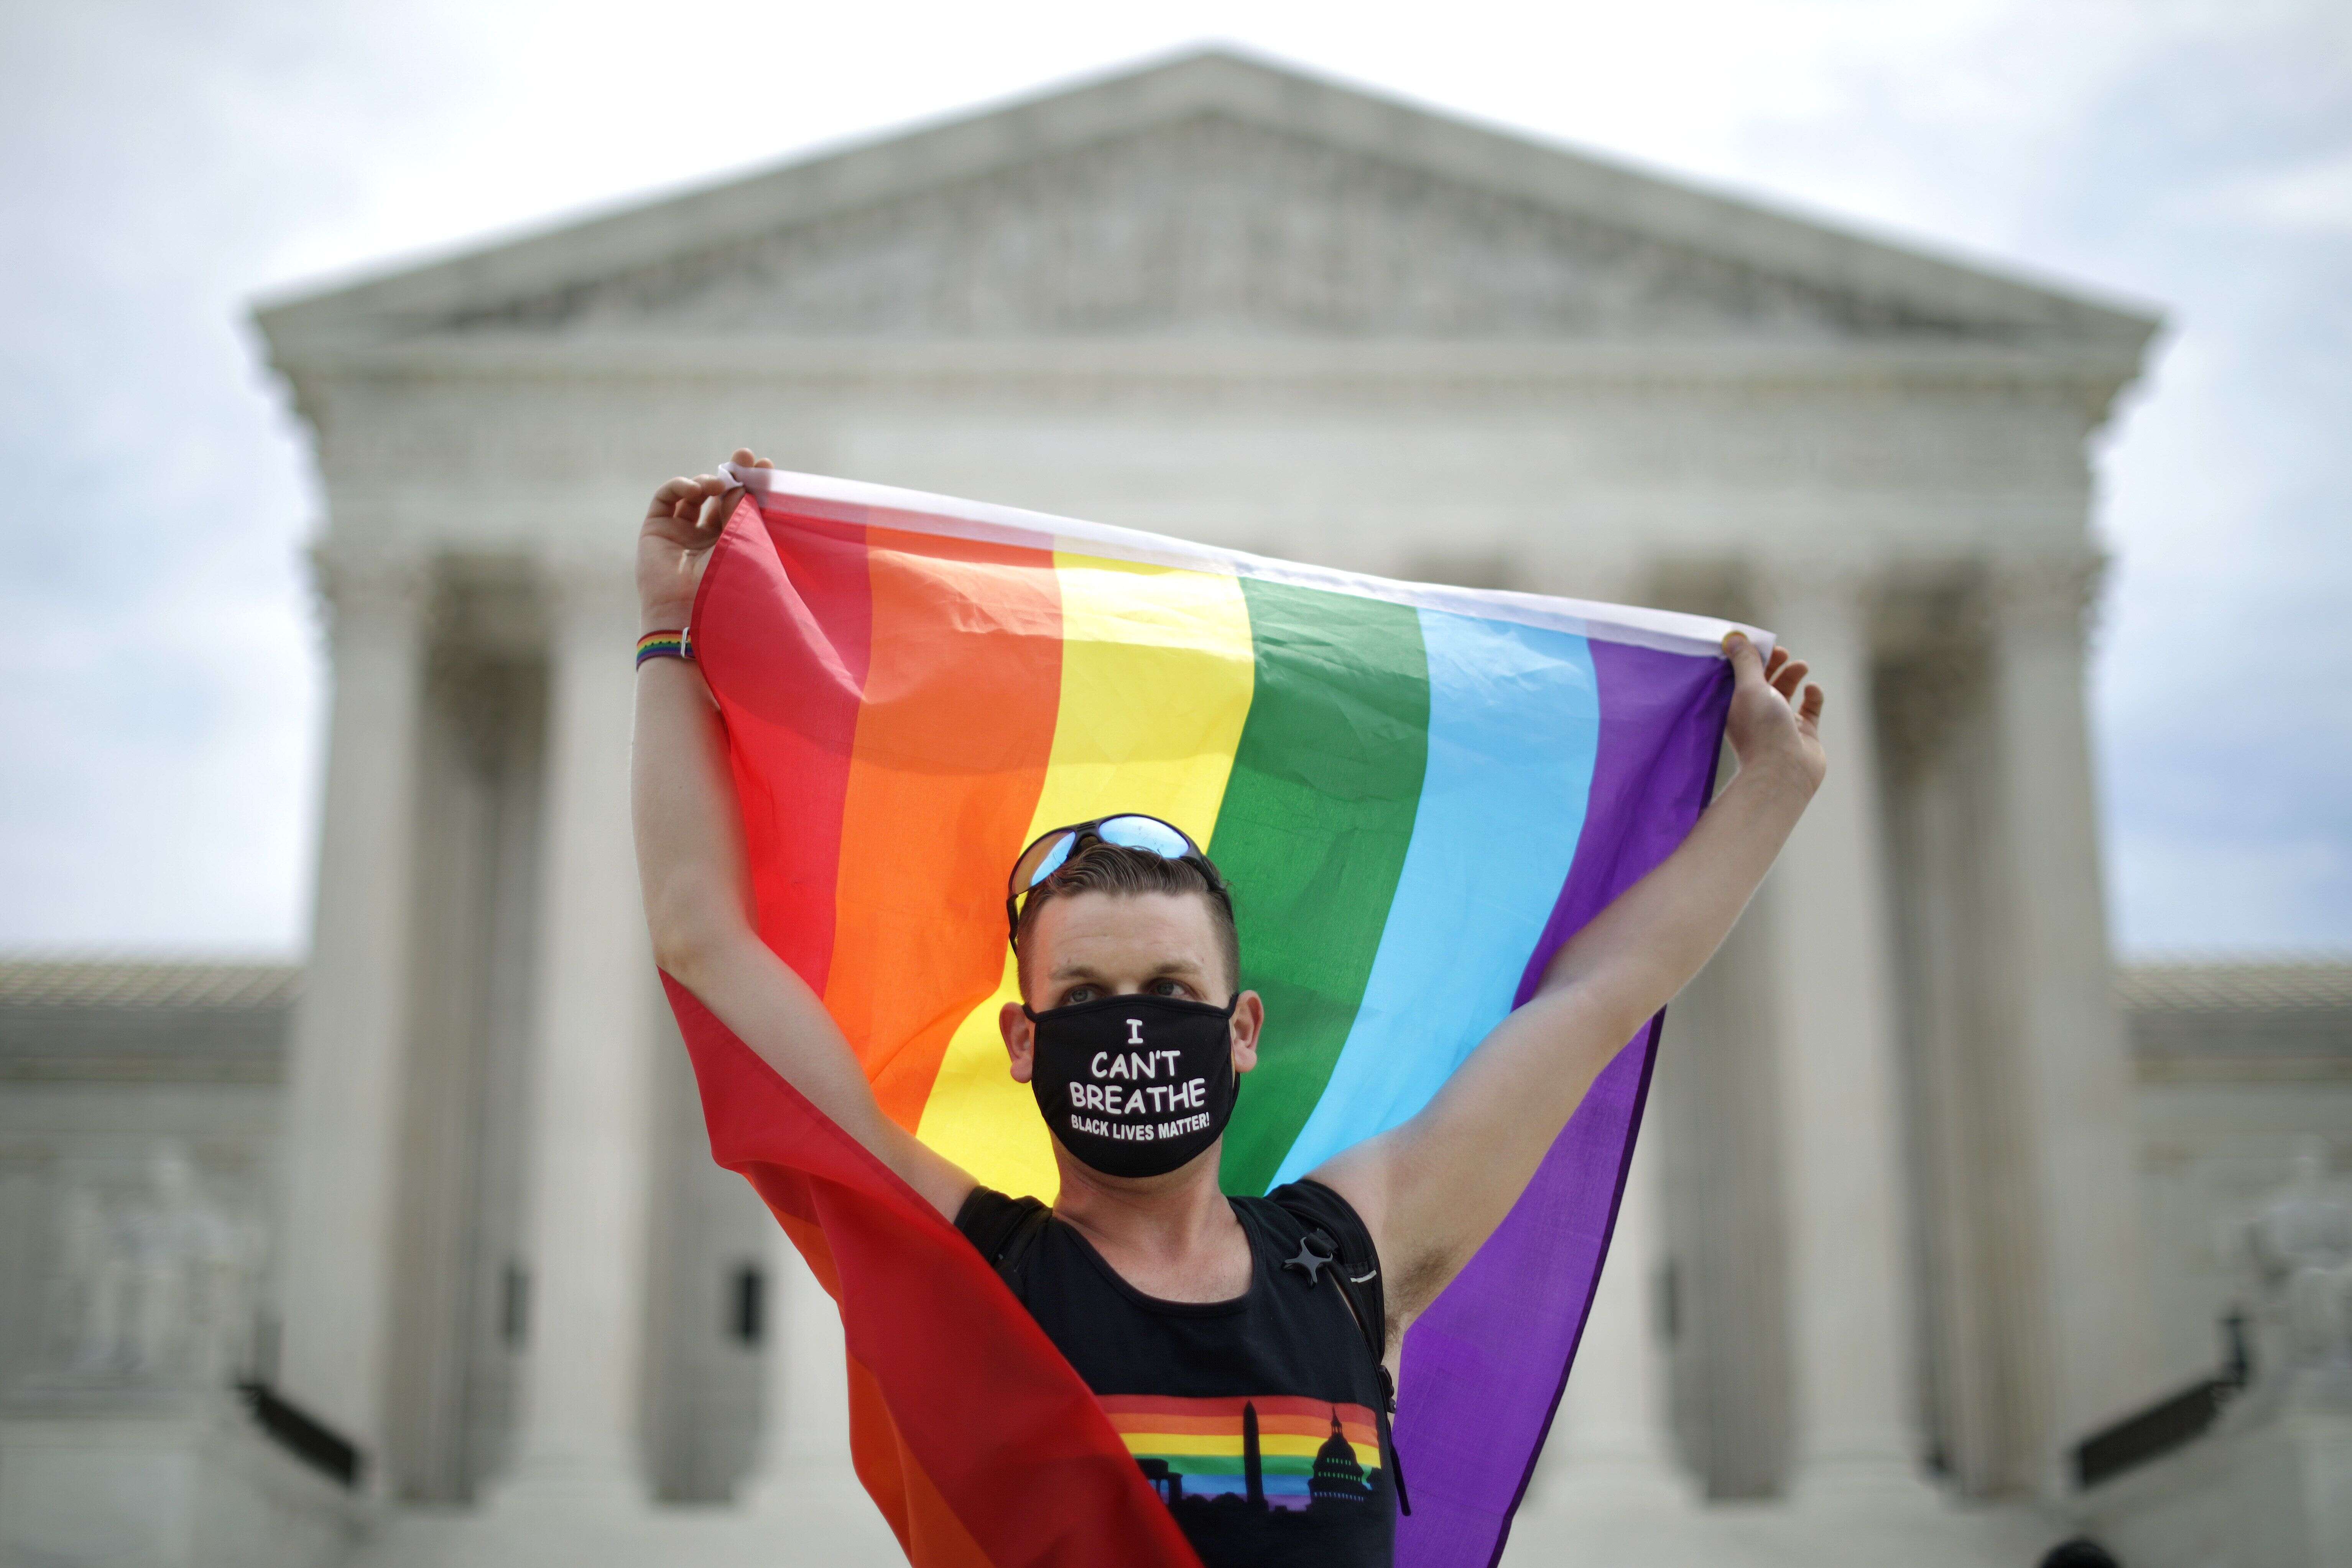 Ce lundi 15 juin, la Cour suprême des États-Unis a étendu la protection contre les discriminations au travail aux personnes transgenres et aux homosexuels.